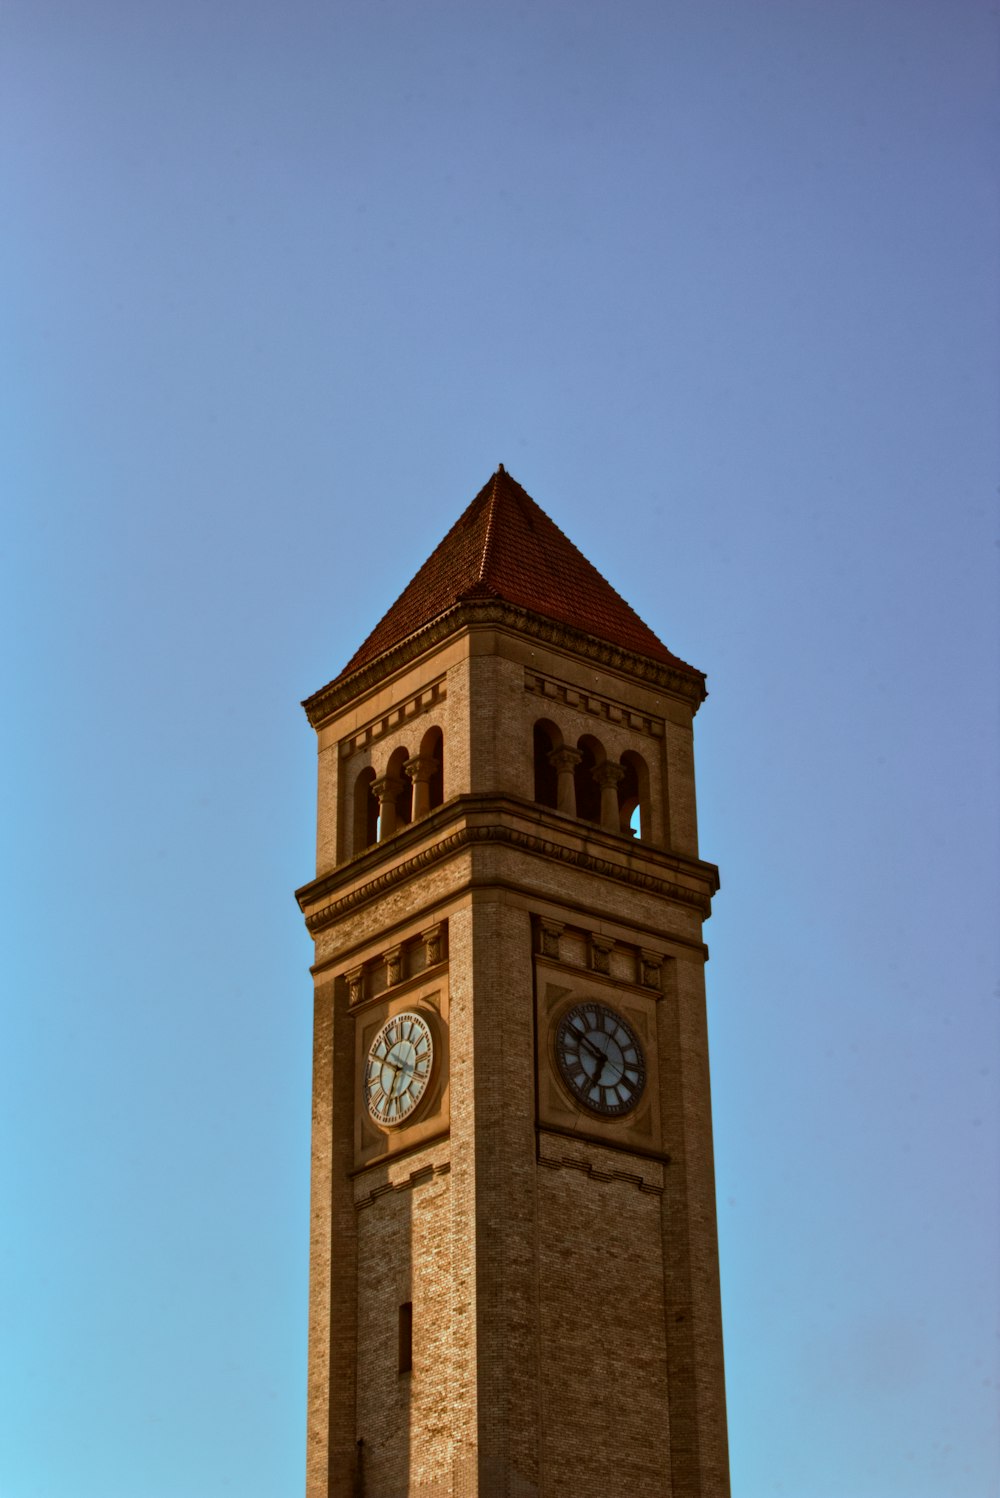 両側に時計が付いた背の高い時計塔